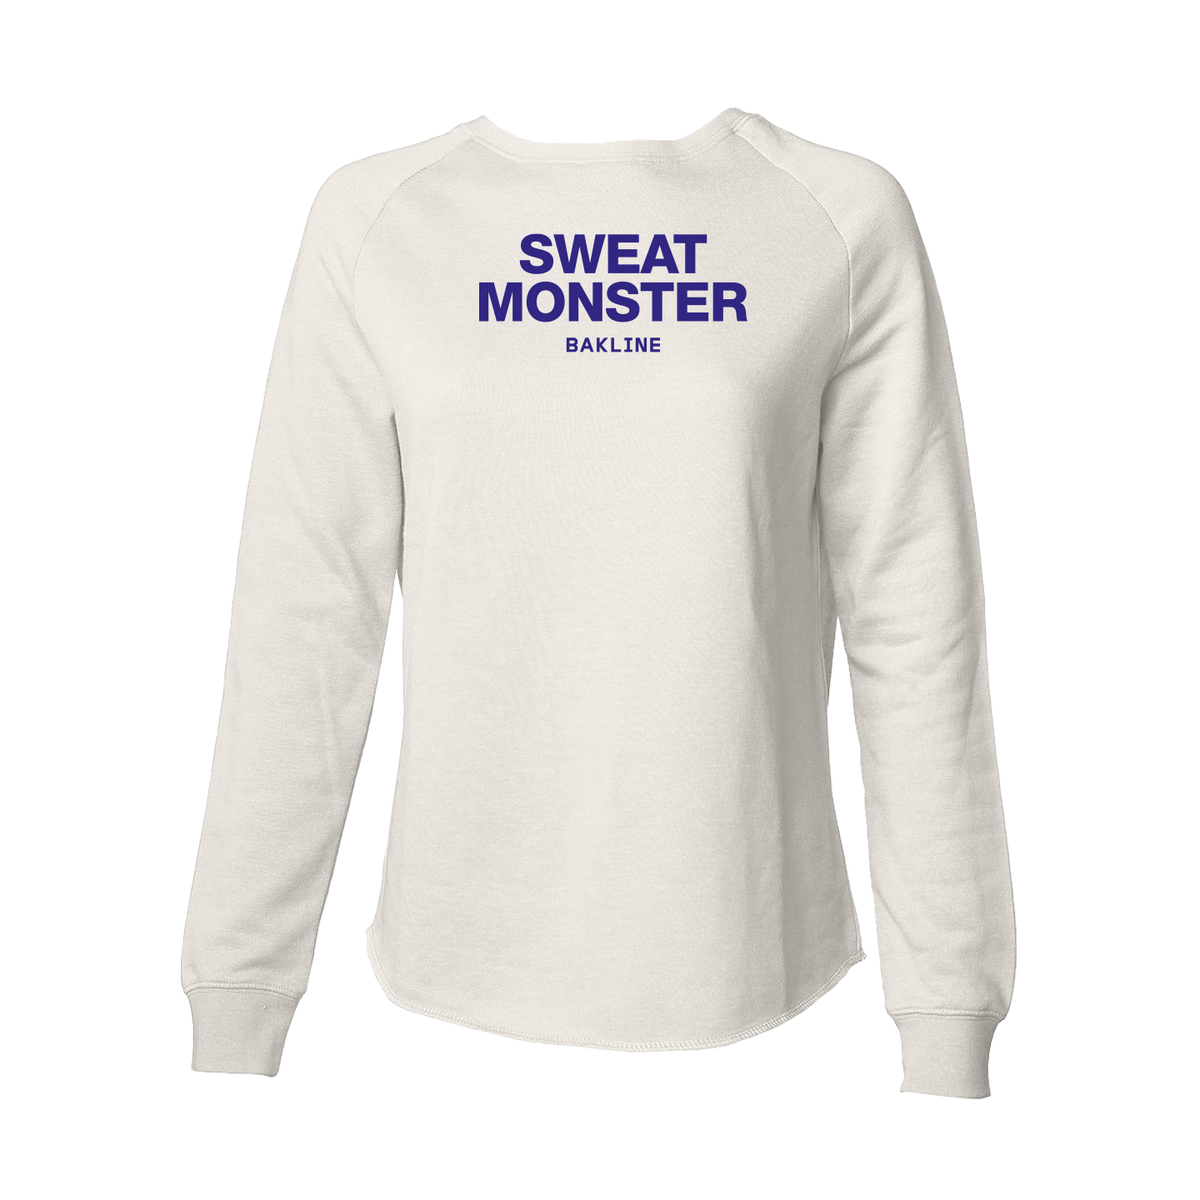 Sweat Monster - Raglan Wave Sweatshirt - Women's - Bakline